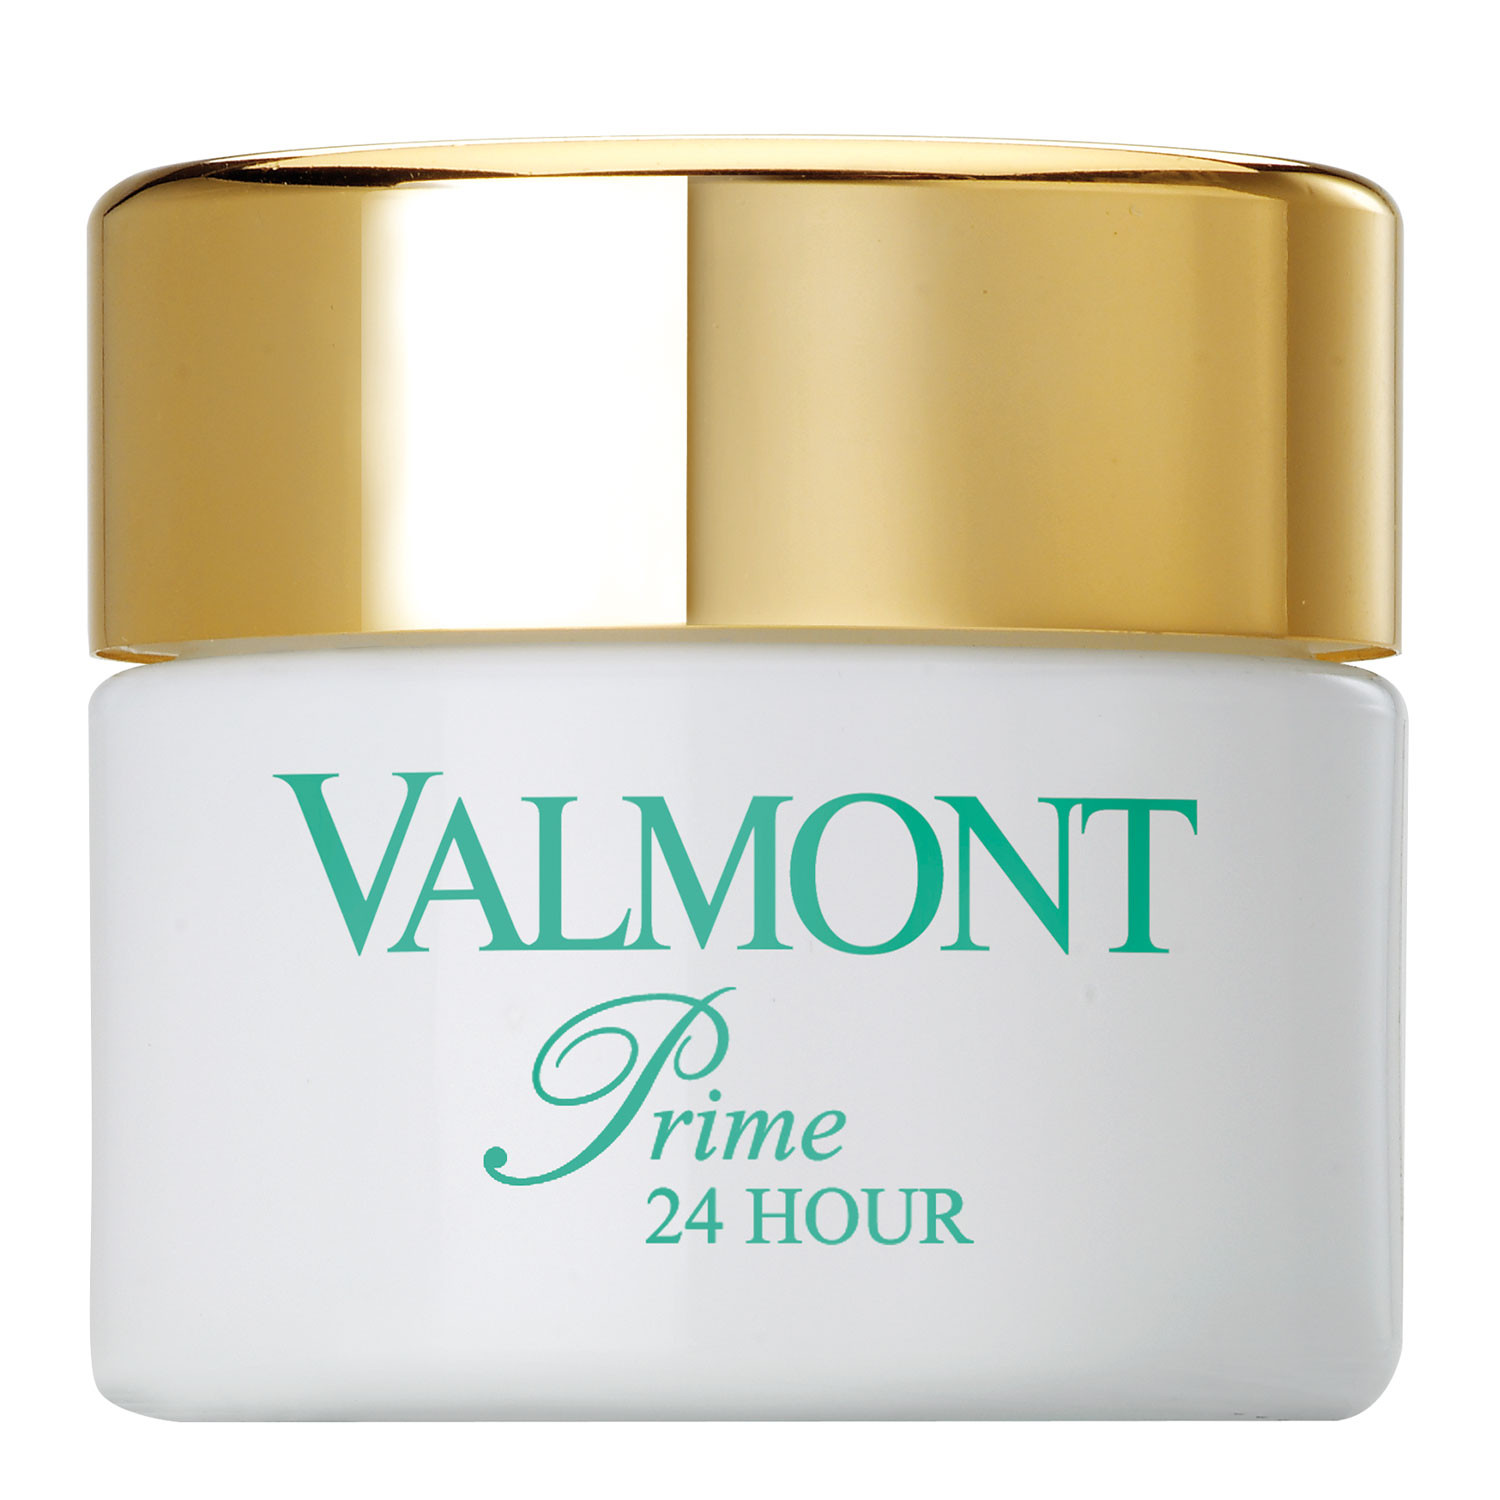 Valmont Prime 24 Hour - Премиум клеточный увлажняющий базовый крем для кожи лица